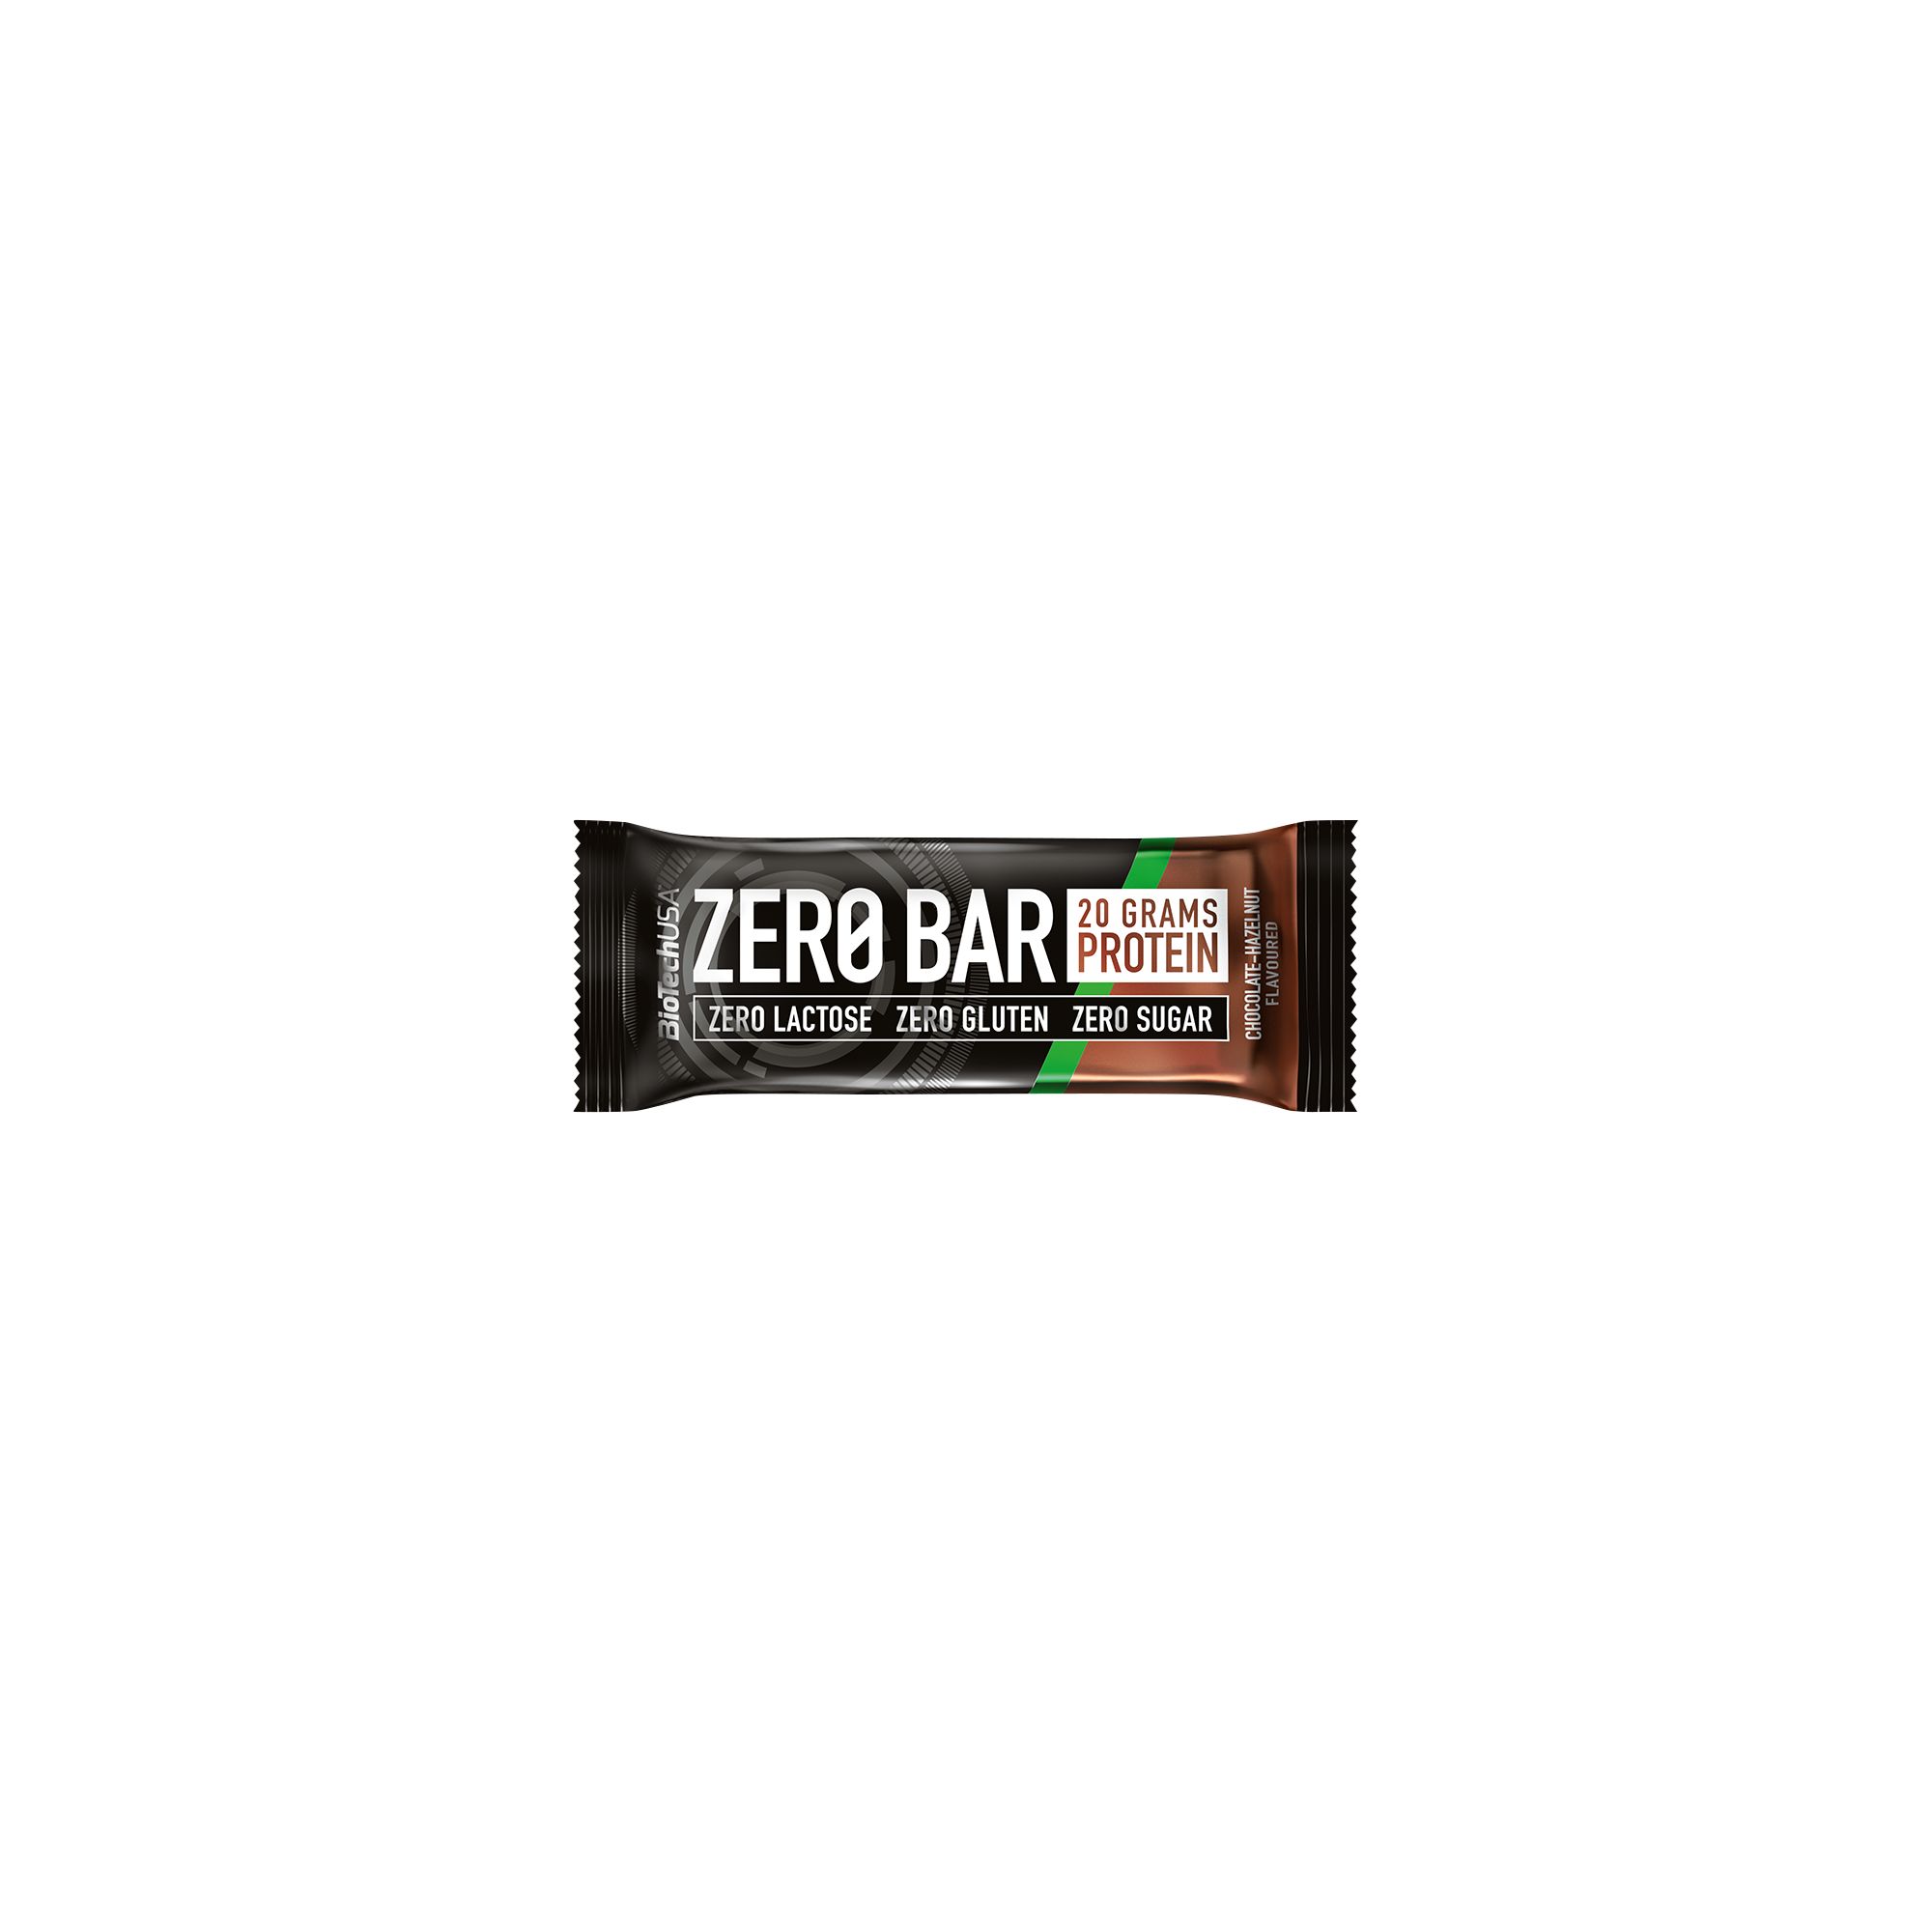 Zero Bar Double Bar imagine 2022 topbody.ro